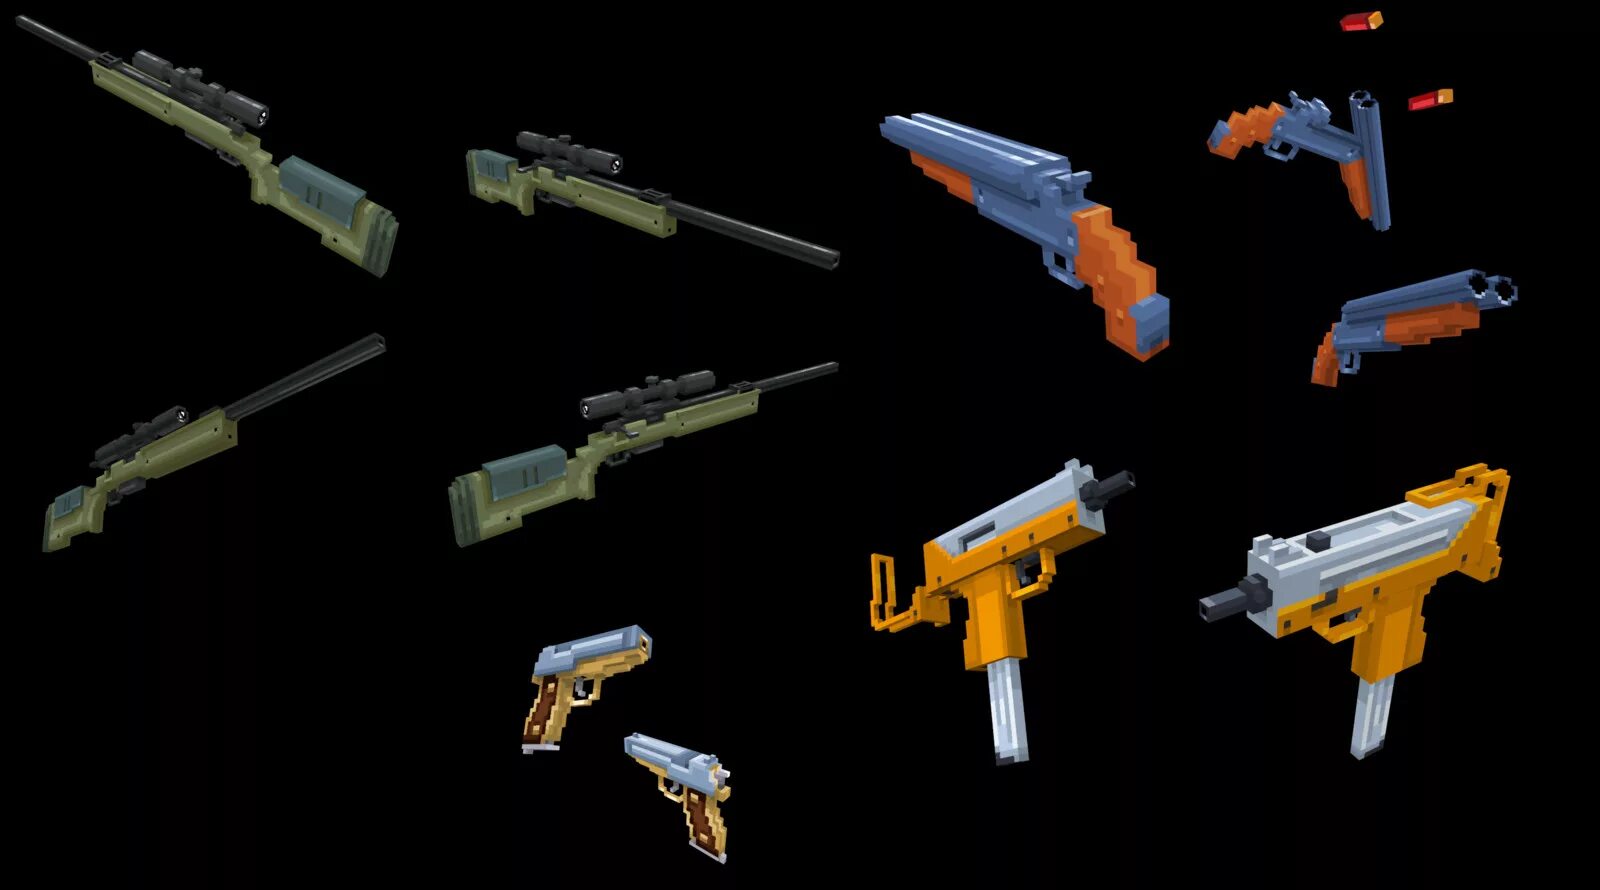 Майнкрафт мод оружие кс го. Воксельный револьвер. Пиксельные оружия. Воксельное оружие. Пиксельная моделька оружия.